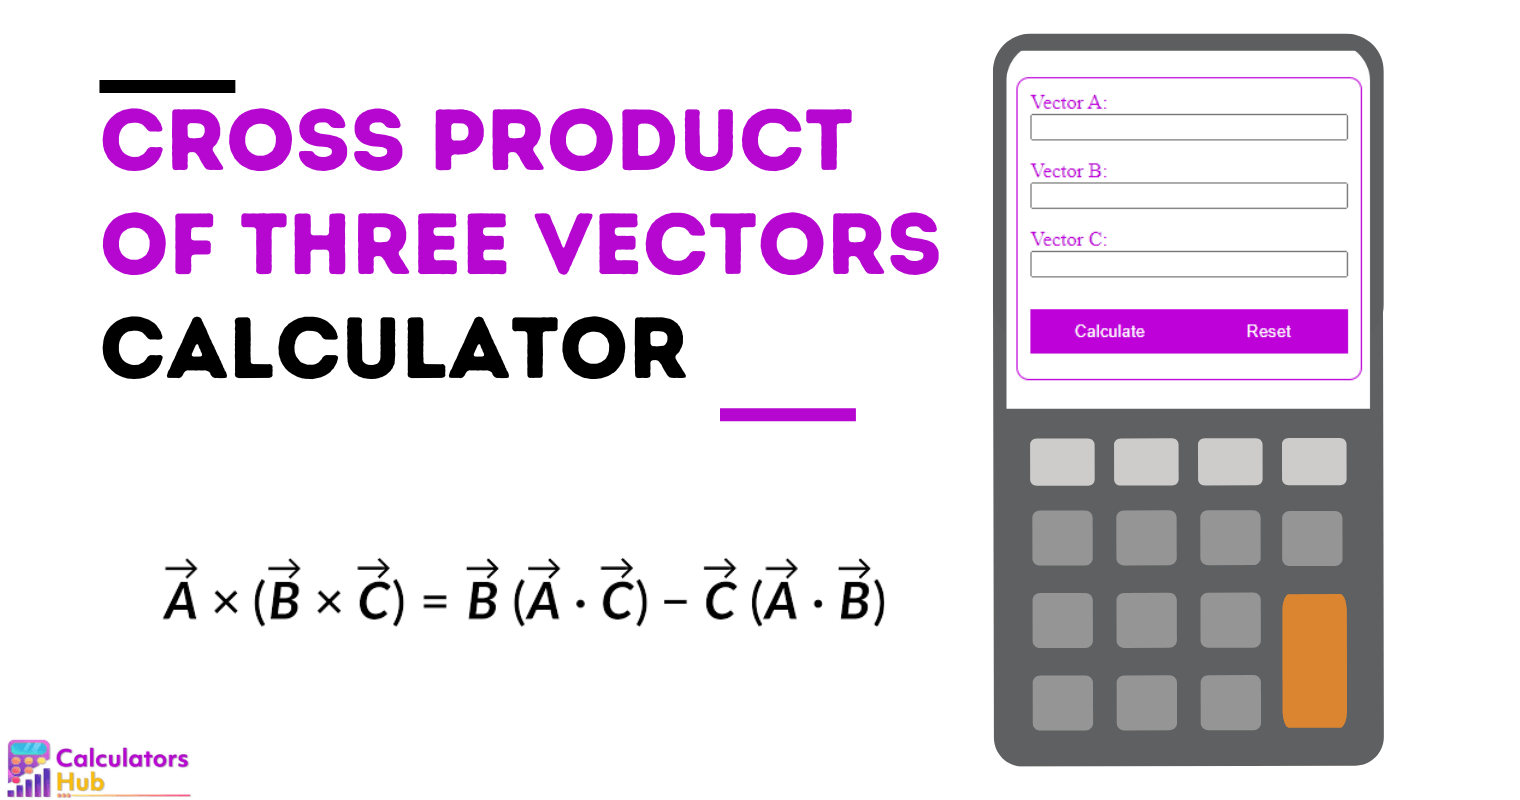 Cross Product of Three Vectors Calculator